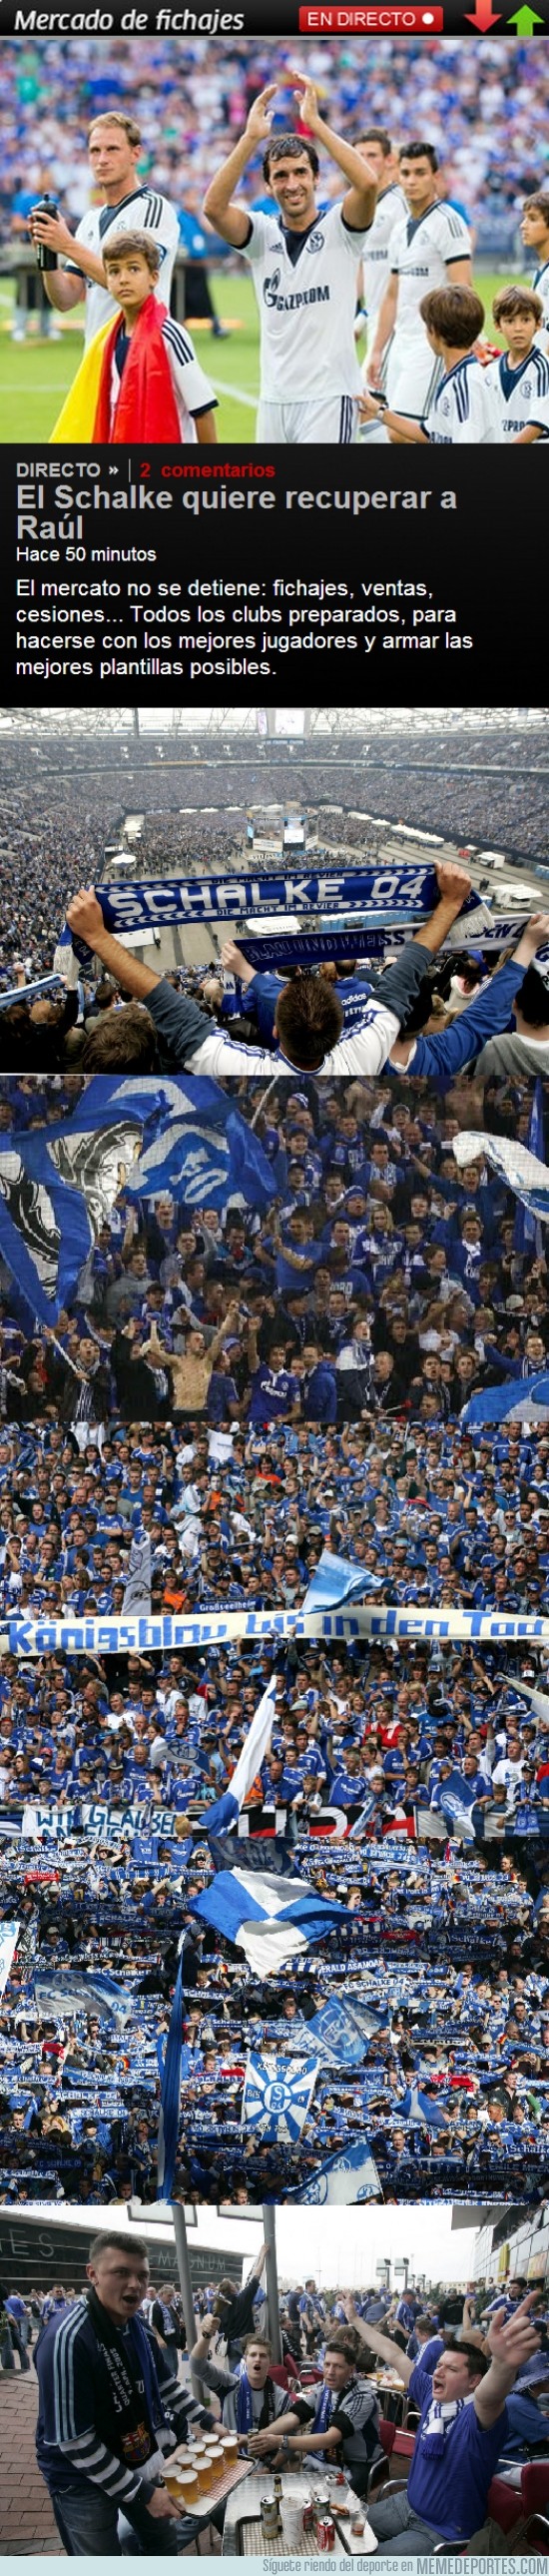 172707 - El Schalke 04 quiere recuperar a Raúl